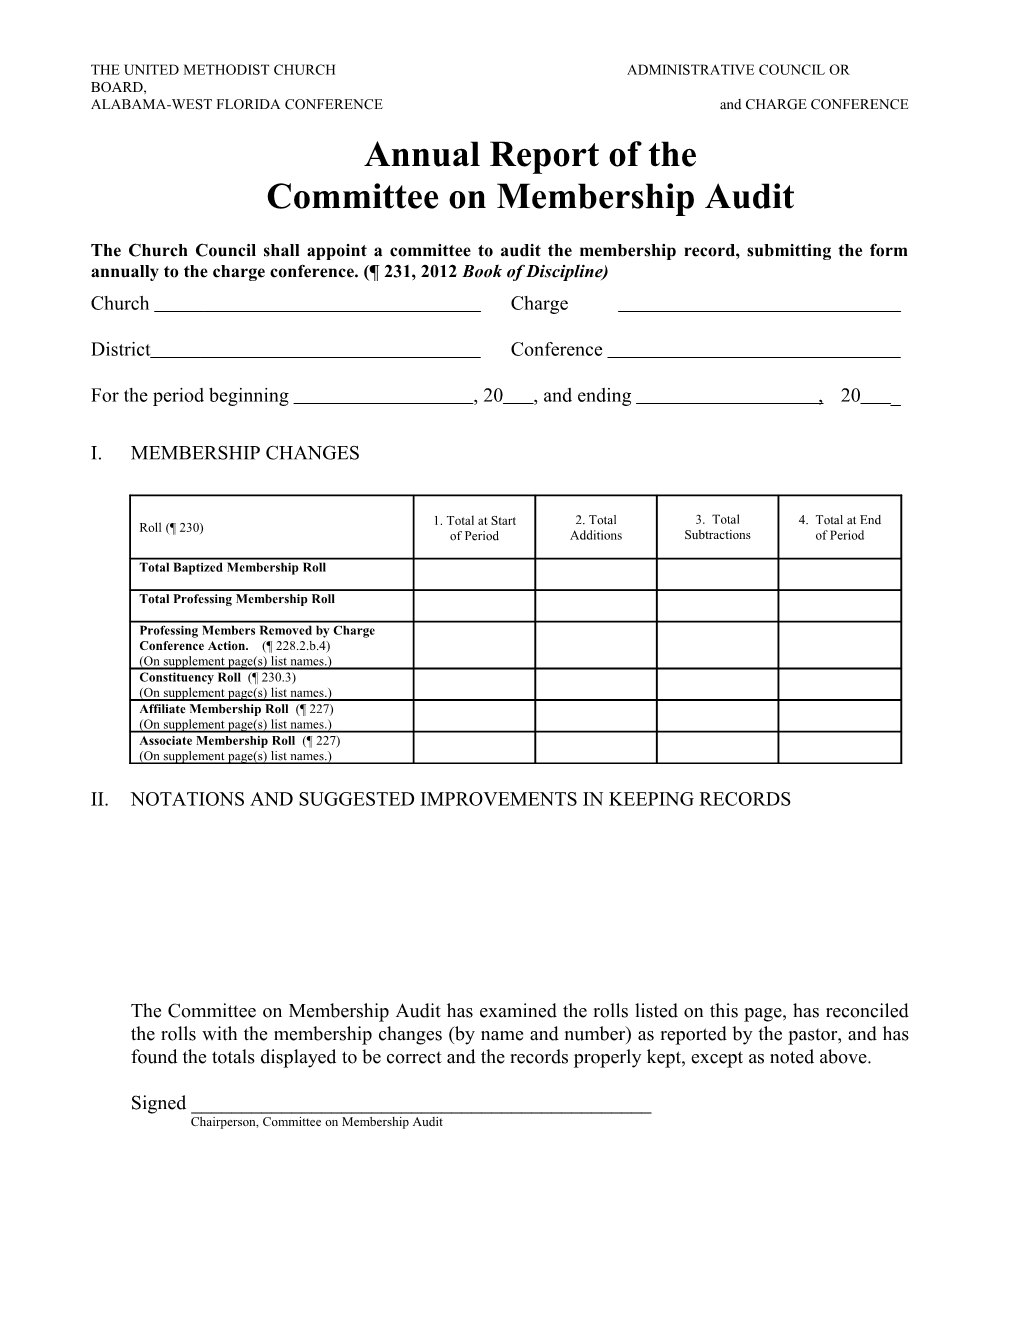 Membership Audit Report